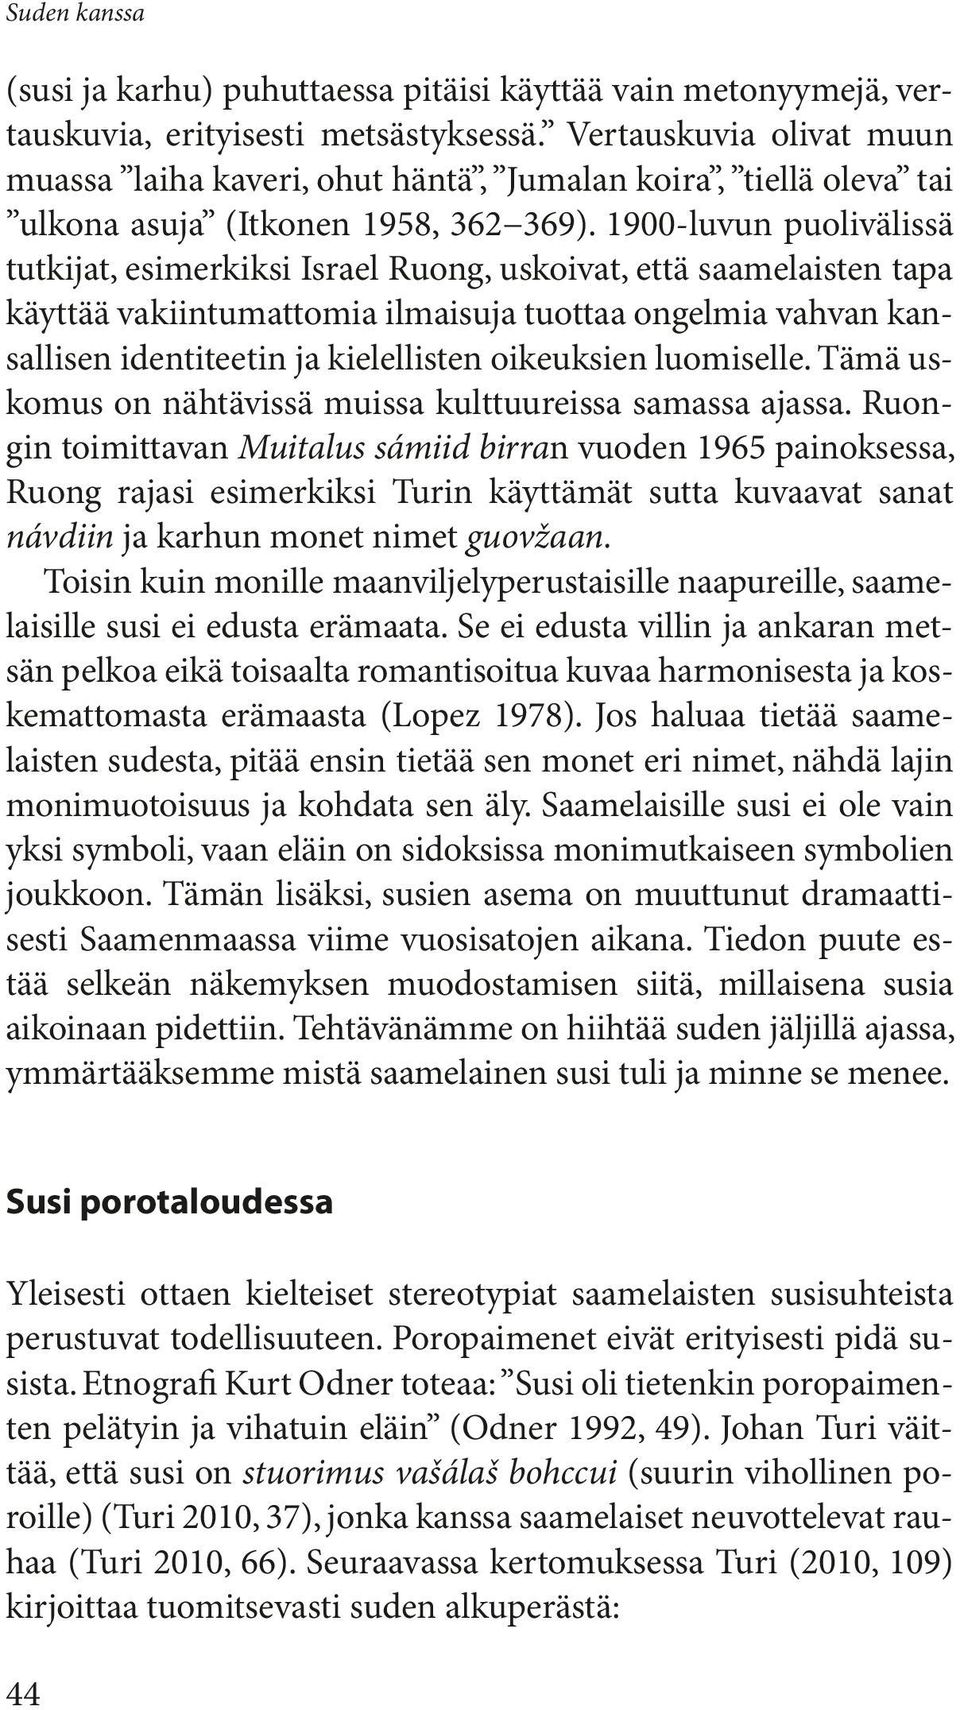 1900-luvun puolivälissä tutkijat, esimerkiksi Israel Ruong, uskoivat, että saamelaisten tapa käyttää vakiintumattomia ilmaisuja tuottaa ongelmia vahvan kansallisen identiteetin ja kielellisten